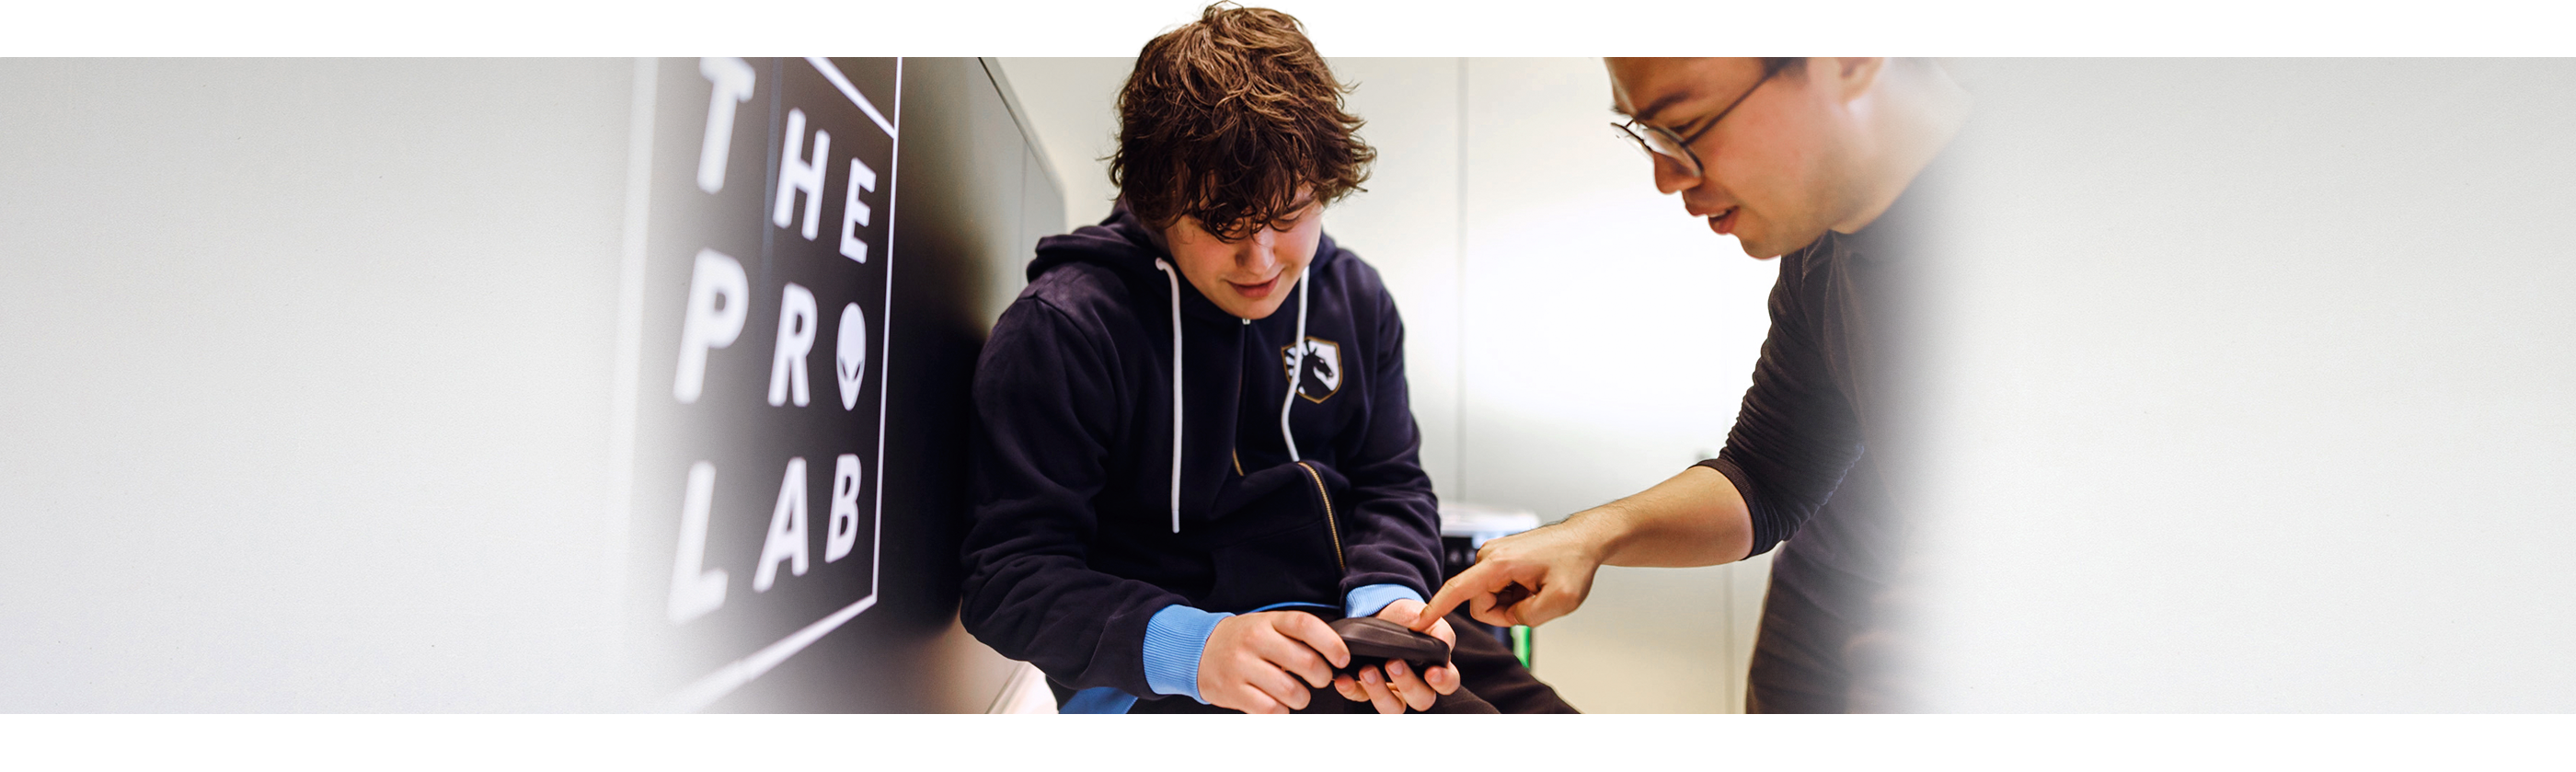 Dell Alienware Proワイヤレス ゲーミング マウスを持っている少年と、横で製品を指さしている男性。